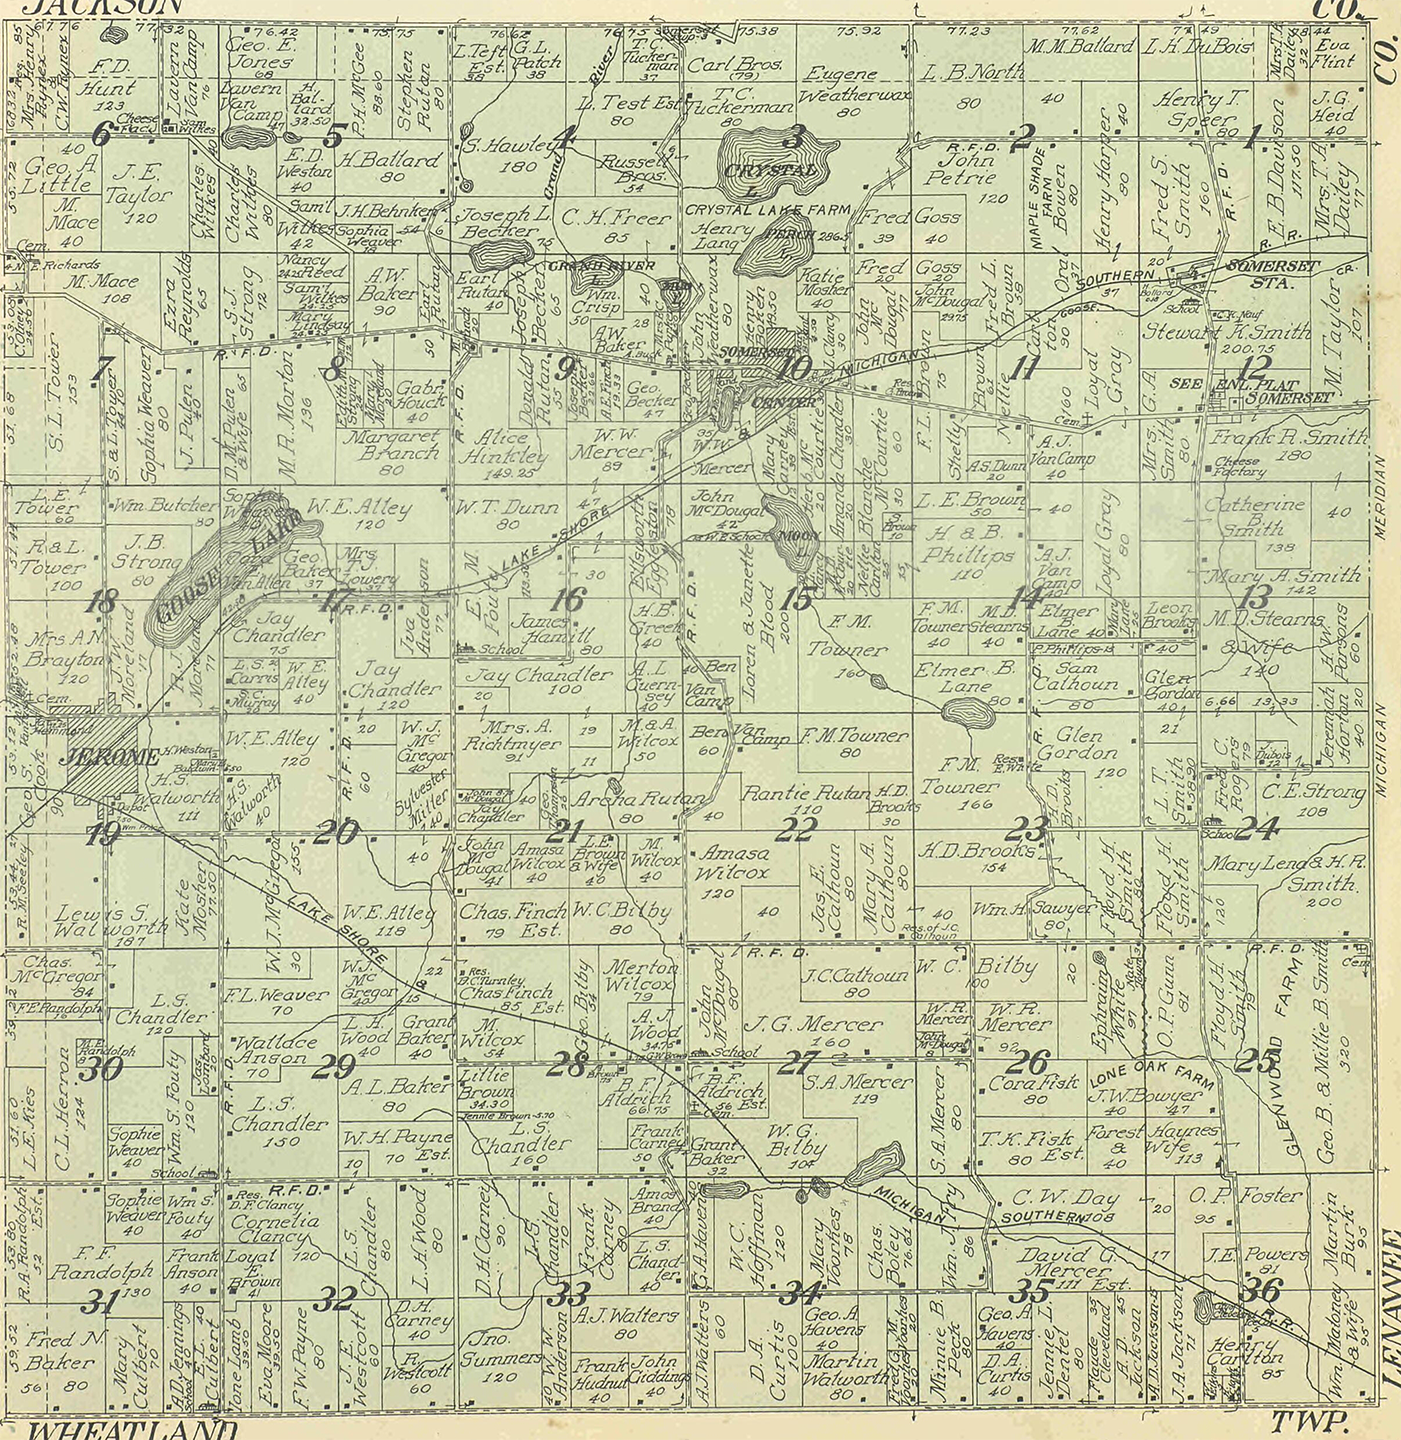 1916 Somerset Township, Michigan landownership map